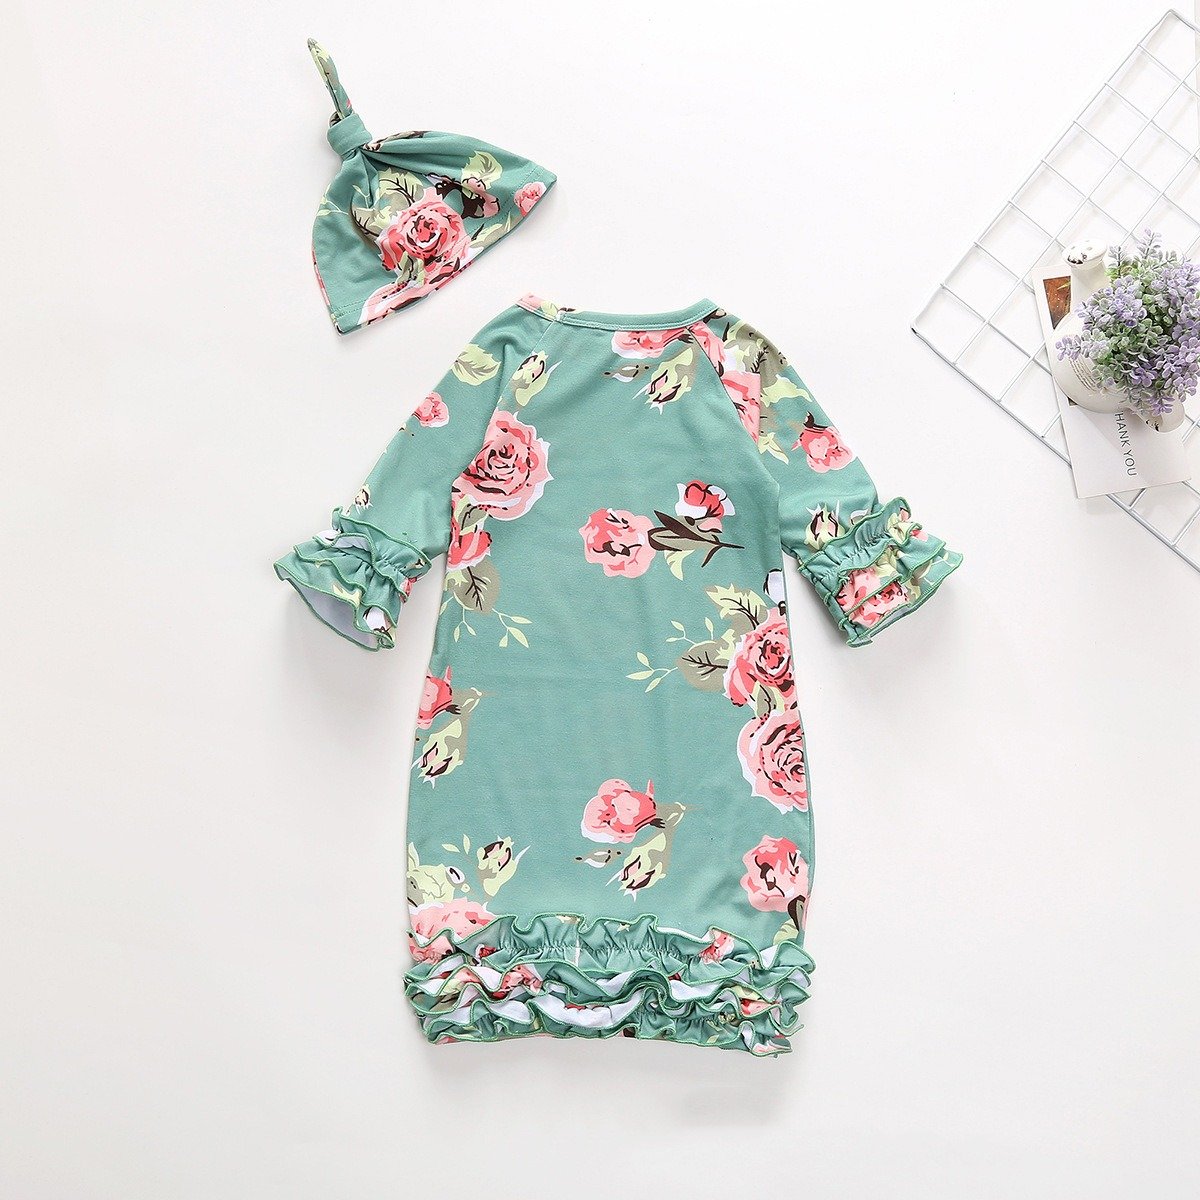 Joli pyjama imprimé floral pour bébé avec chapeau